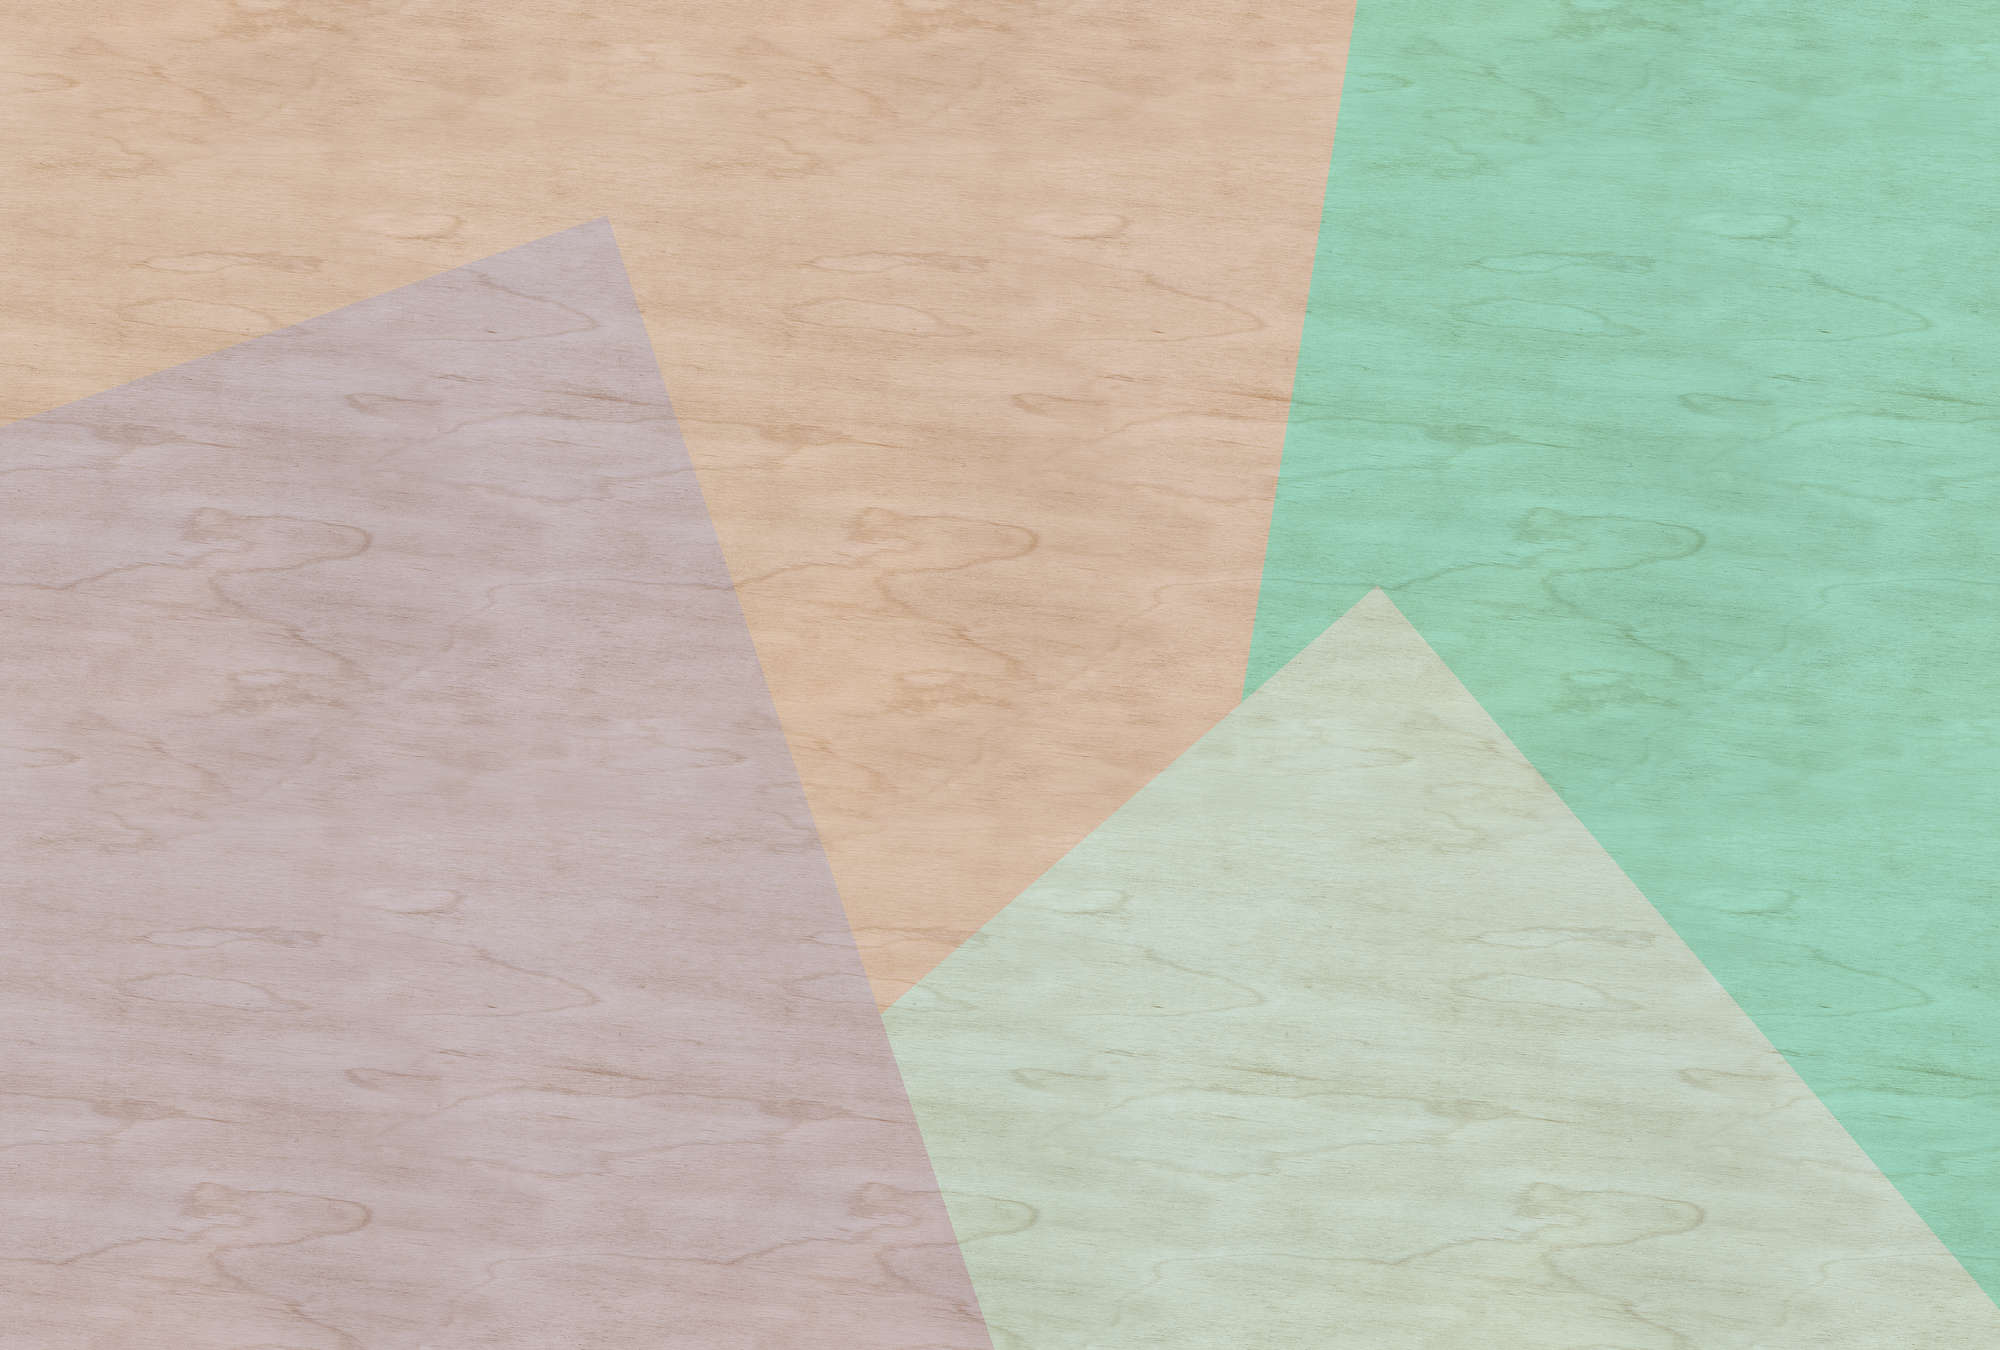             Inaly 1 - Papel pintado fotográfico abstracto y colorido en estructura contrachapada - Beige, Verde | Perla liso no tejido
        